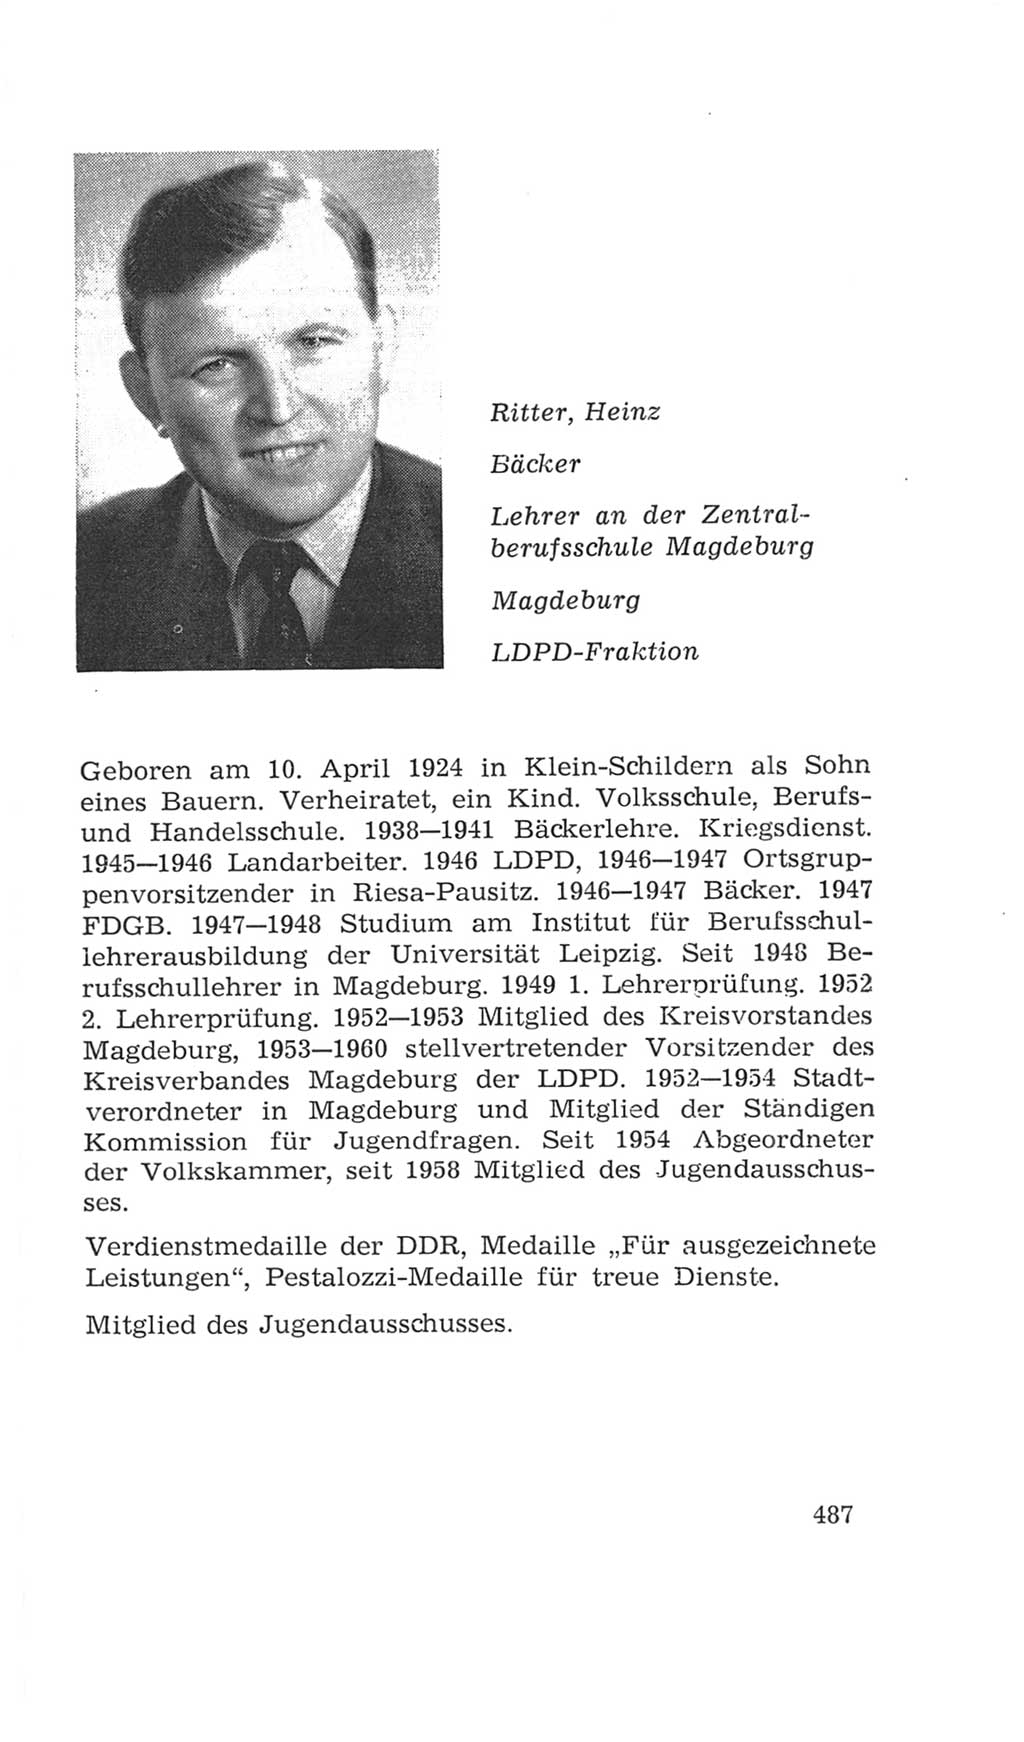 Volkskammer (VK) der Deutschen Demokratischen Republik (DDR), 4. Wahlperiode 1963-1967, Seite 487 (VK. DDR 4. WP. 1963-1967, S. 487)